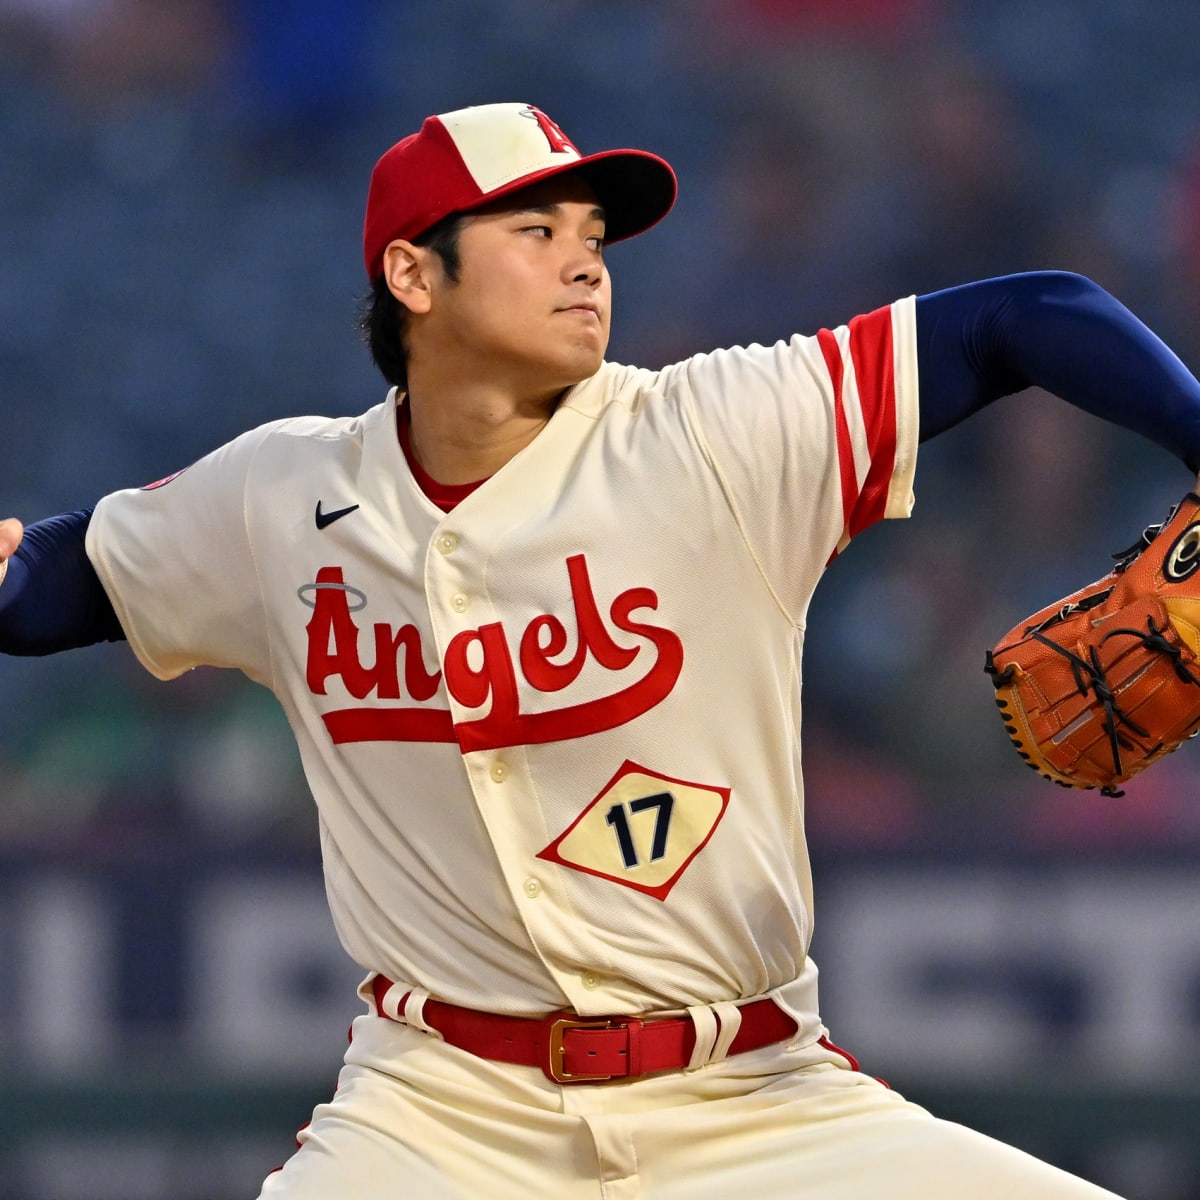 LA Times Columnist Feels Shohei Ohtani Needs to Leave Anaheim